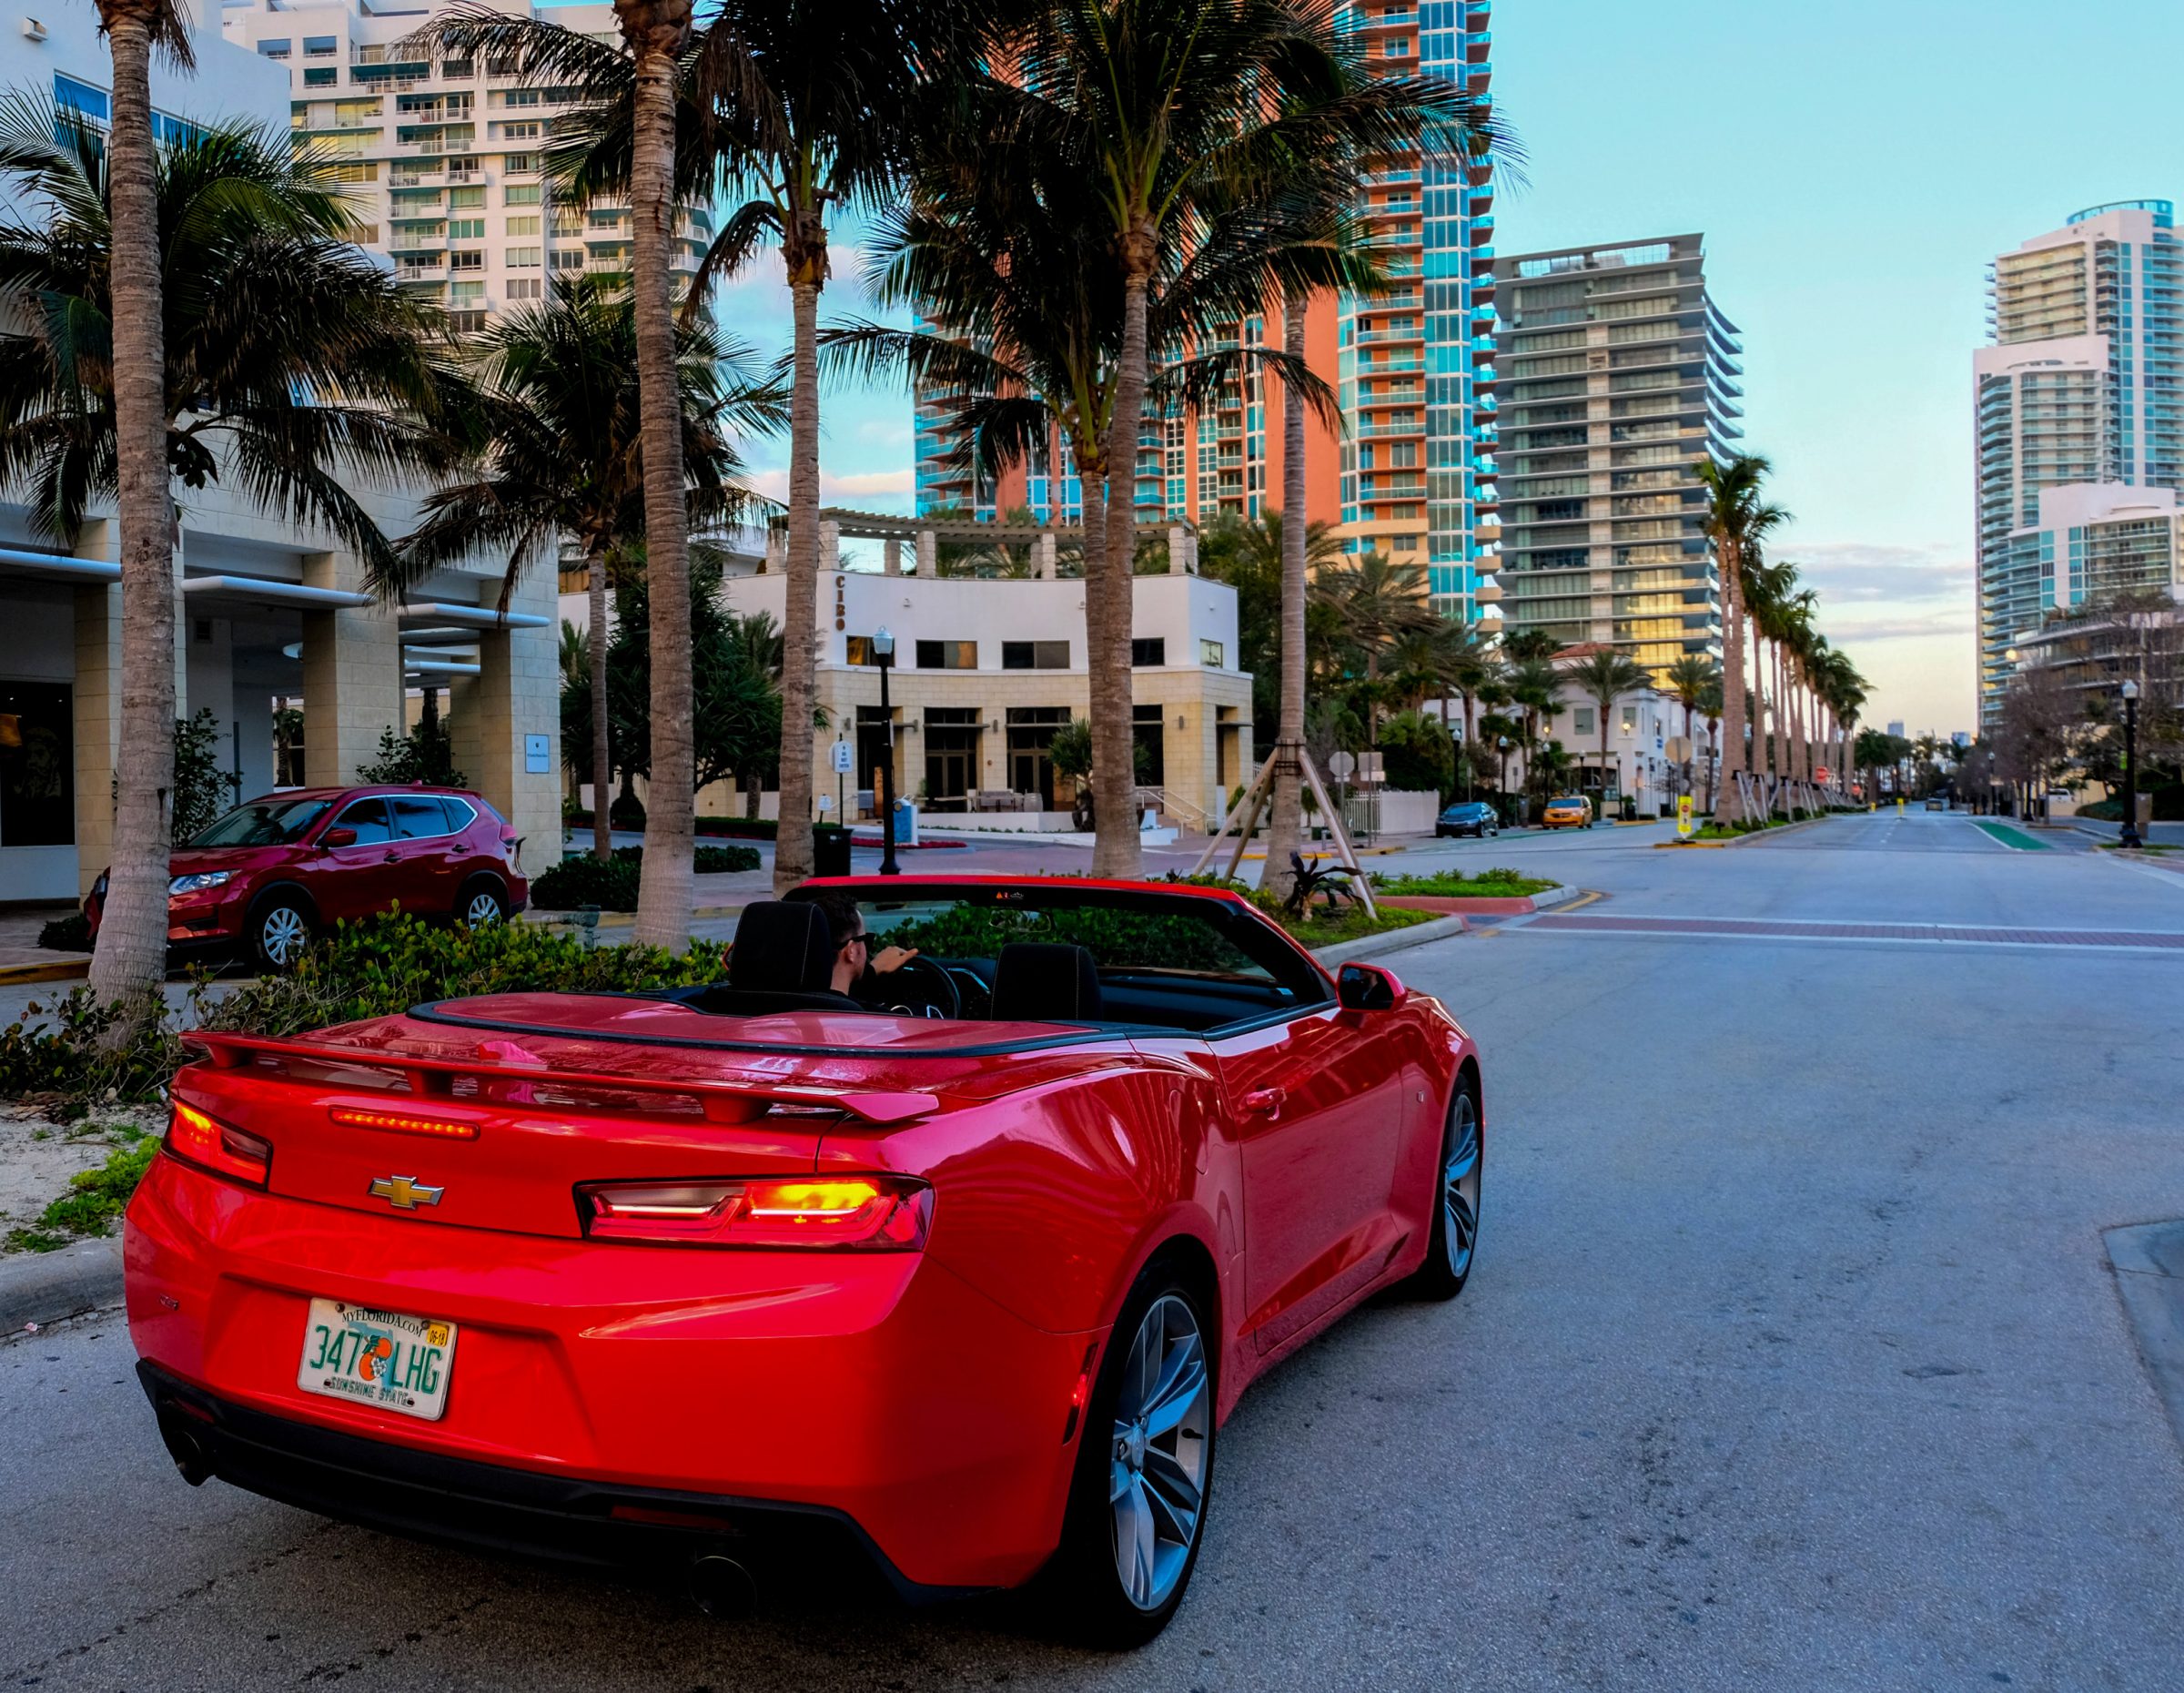 Huur een vette wagen in Miami! | Hoogtepunten roadtrip New York - Key West